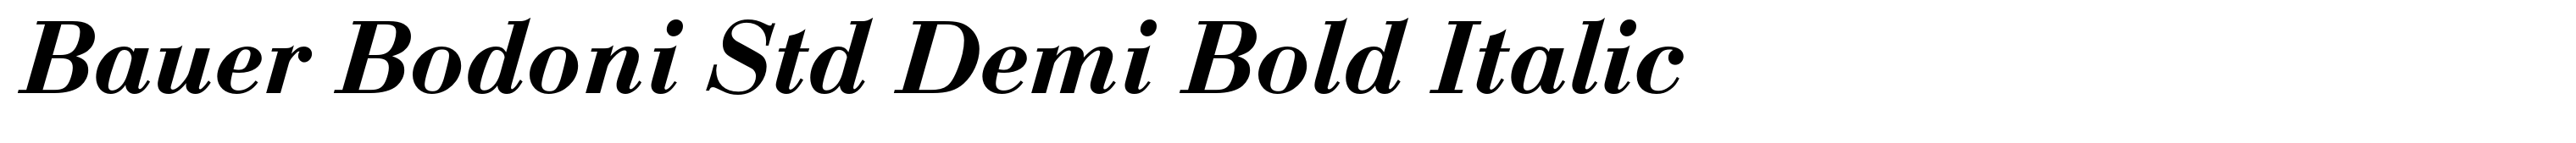 Bauer Bodoni Std Demi Bold Italic